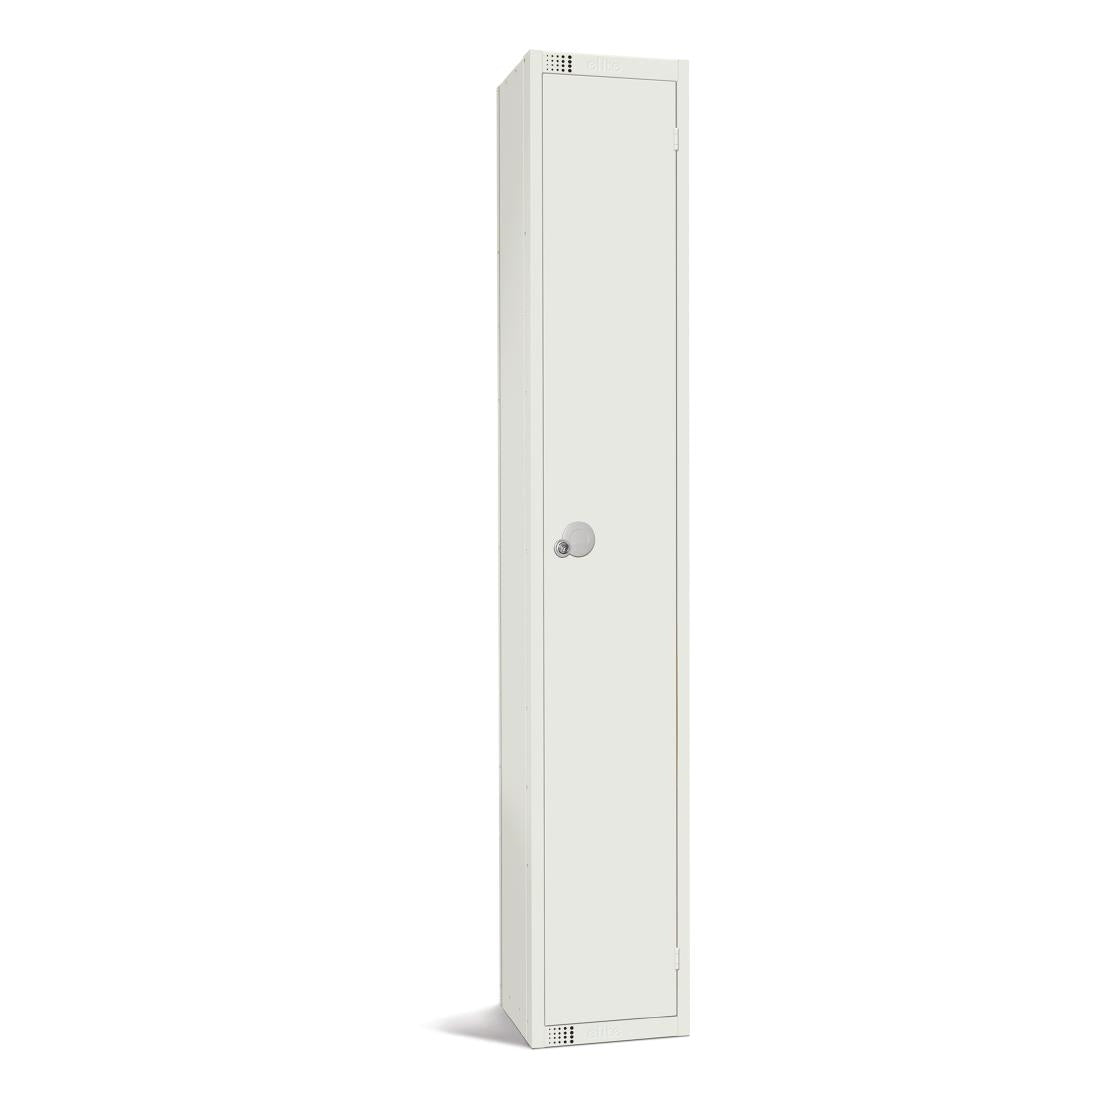 GR302-CN Elite Single Door Coin Return Locker White JD Catering Equipment Solutions Ltd